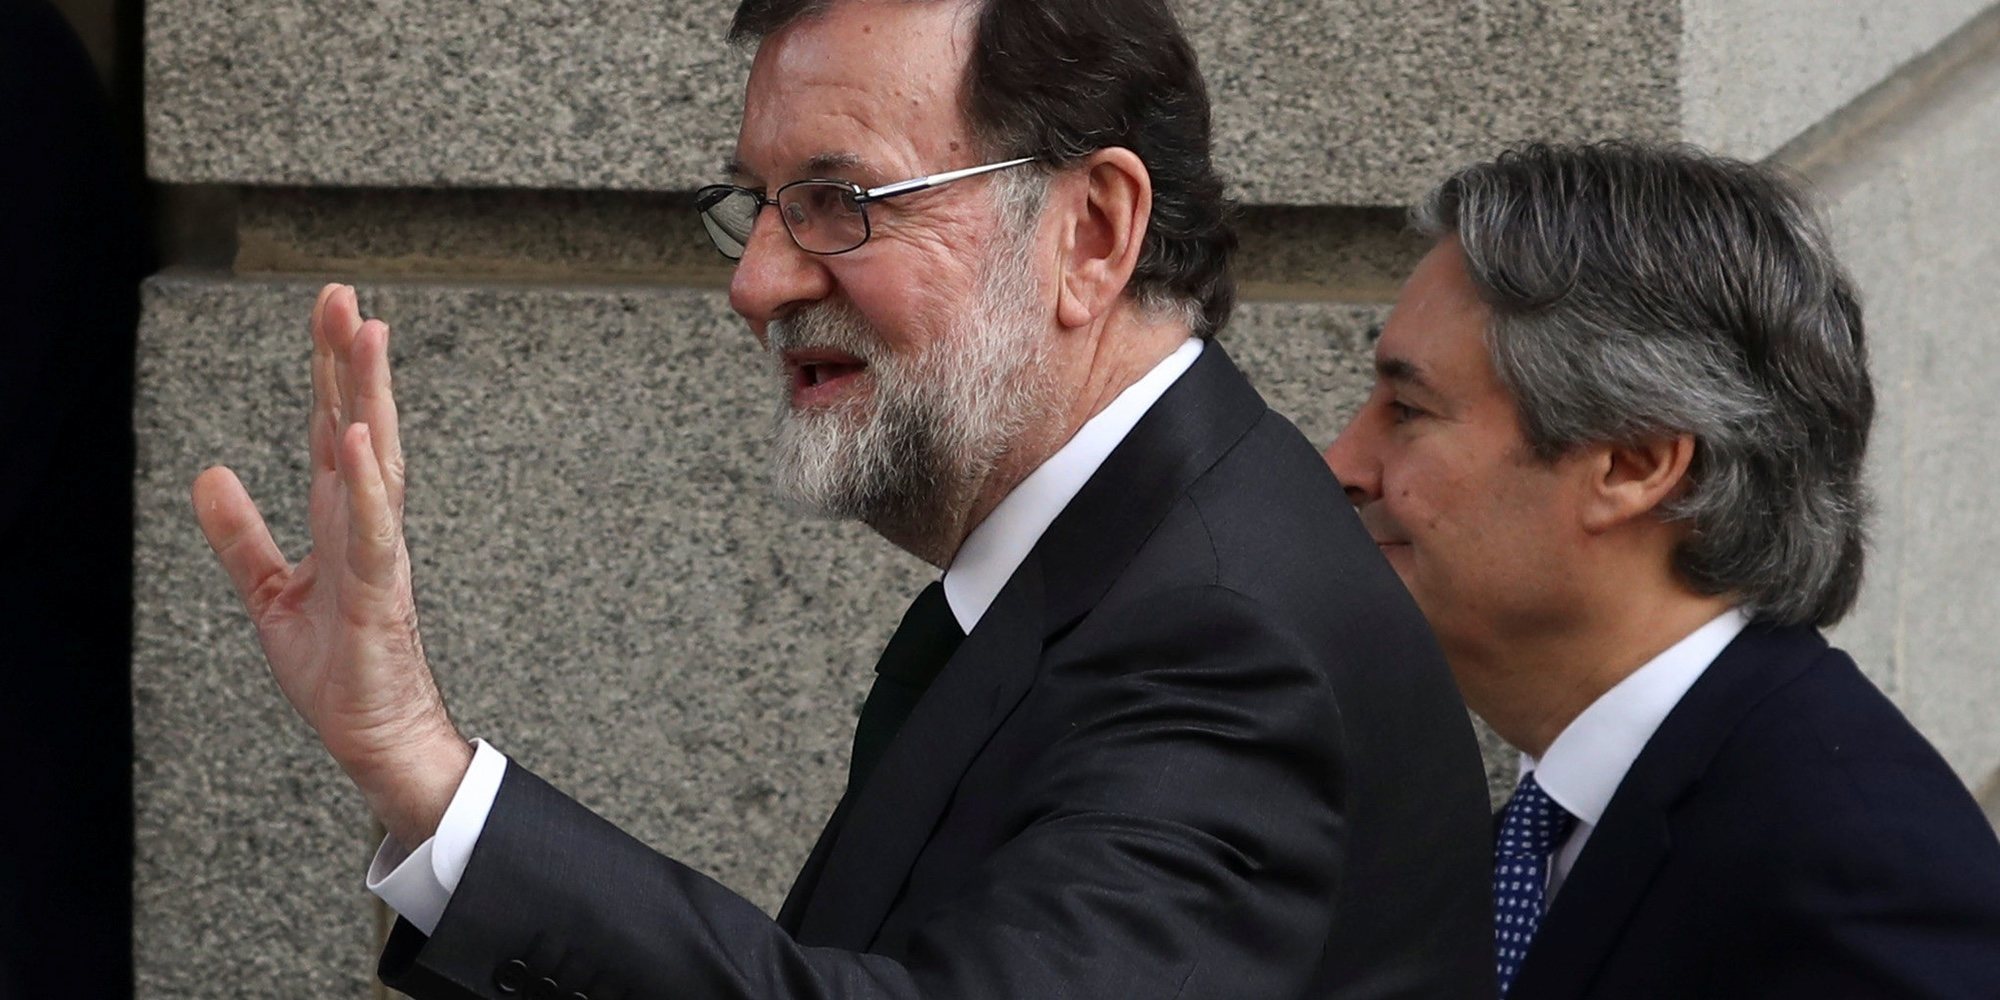 La despedida de Mariano Rajoy ante el triunfo de la moción de censura: "No puedo compartir lo que se ha hecho"